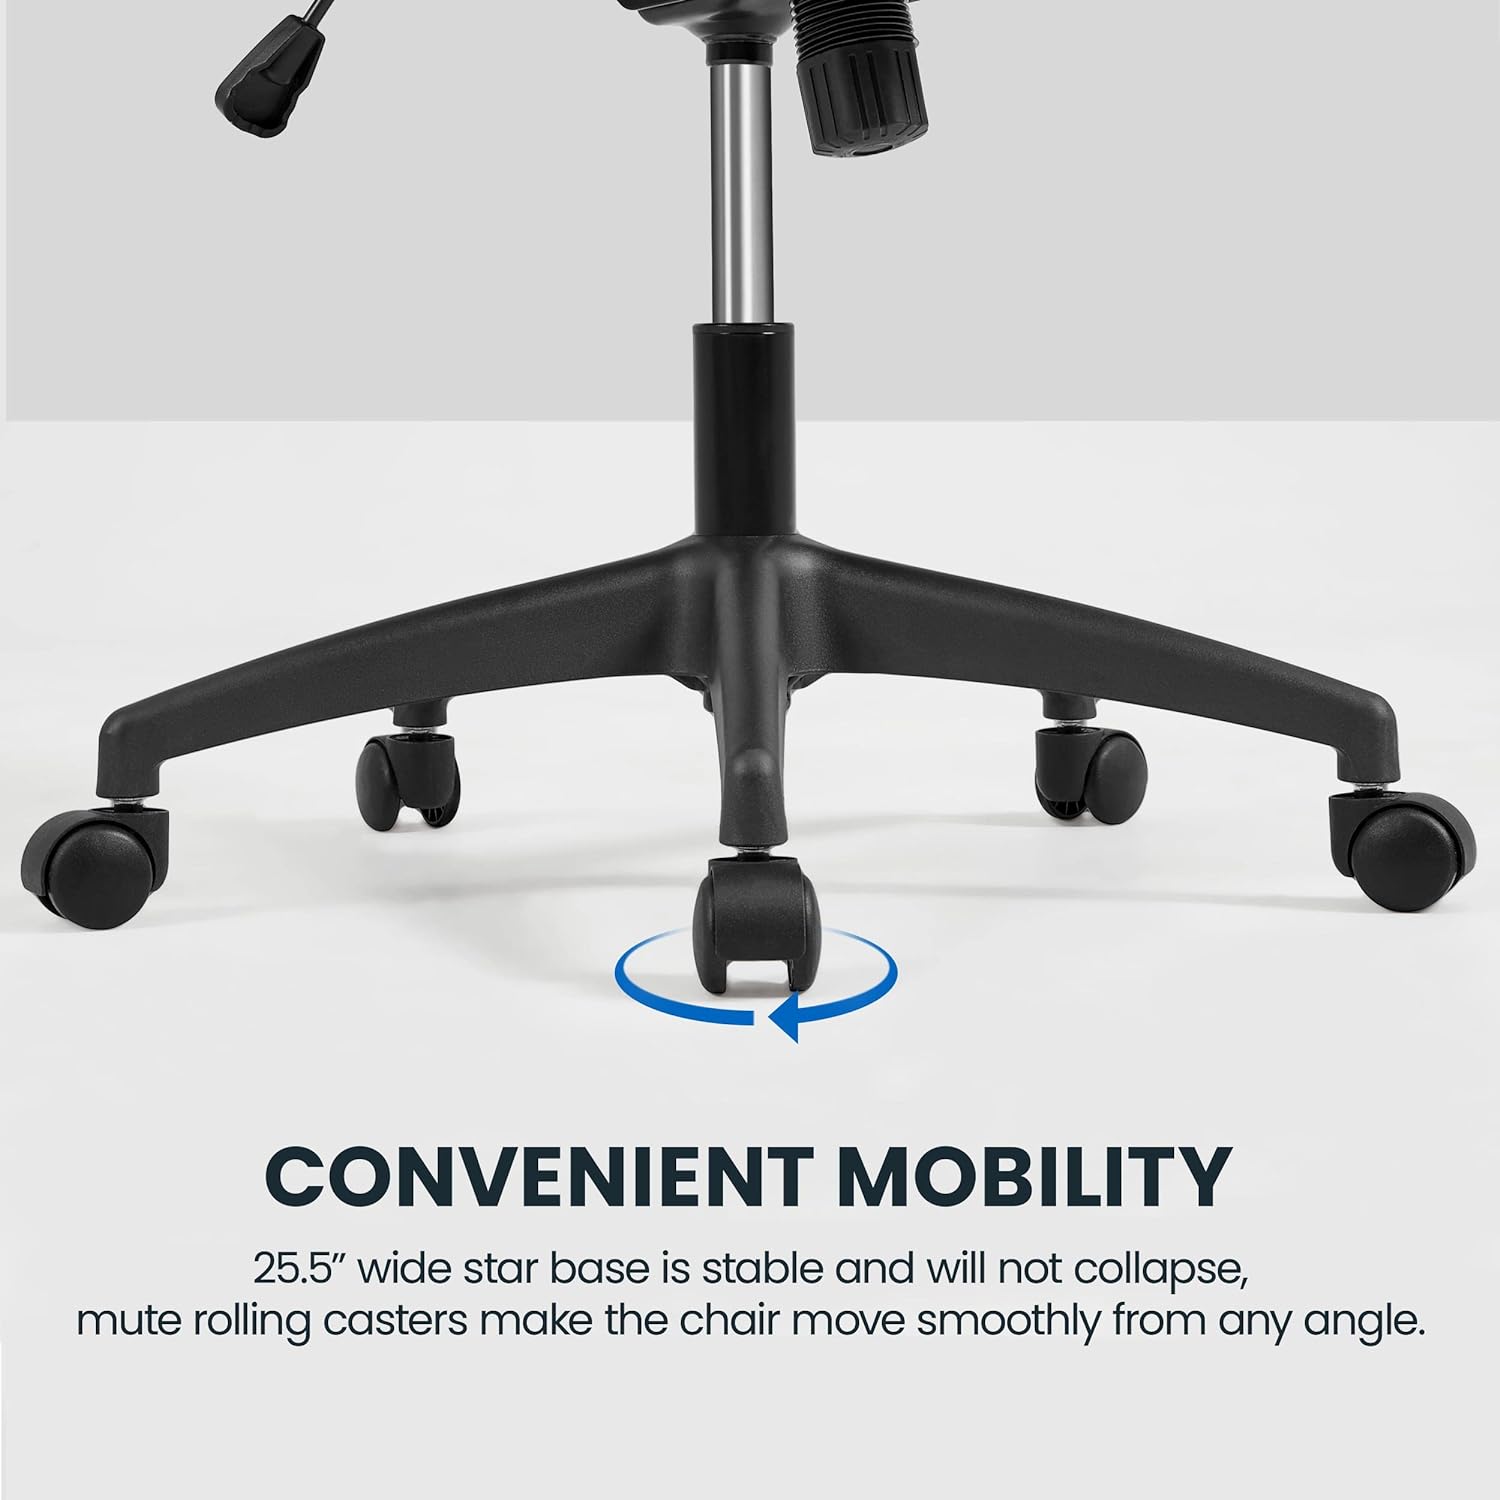 Silla de oficina ergonómica de malla, silla de escritorio con respaldo alto con reposabrazos